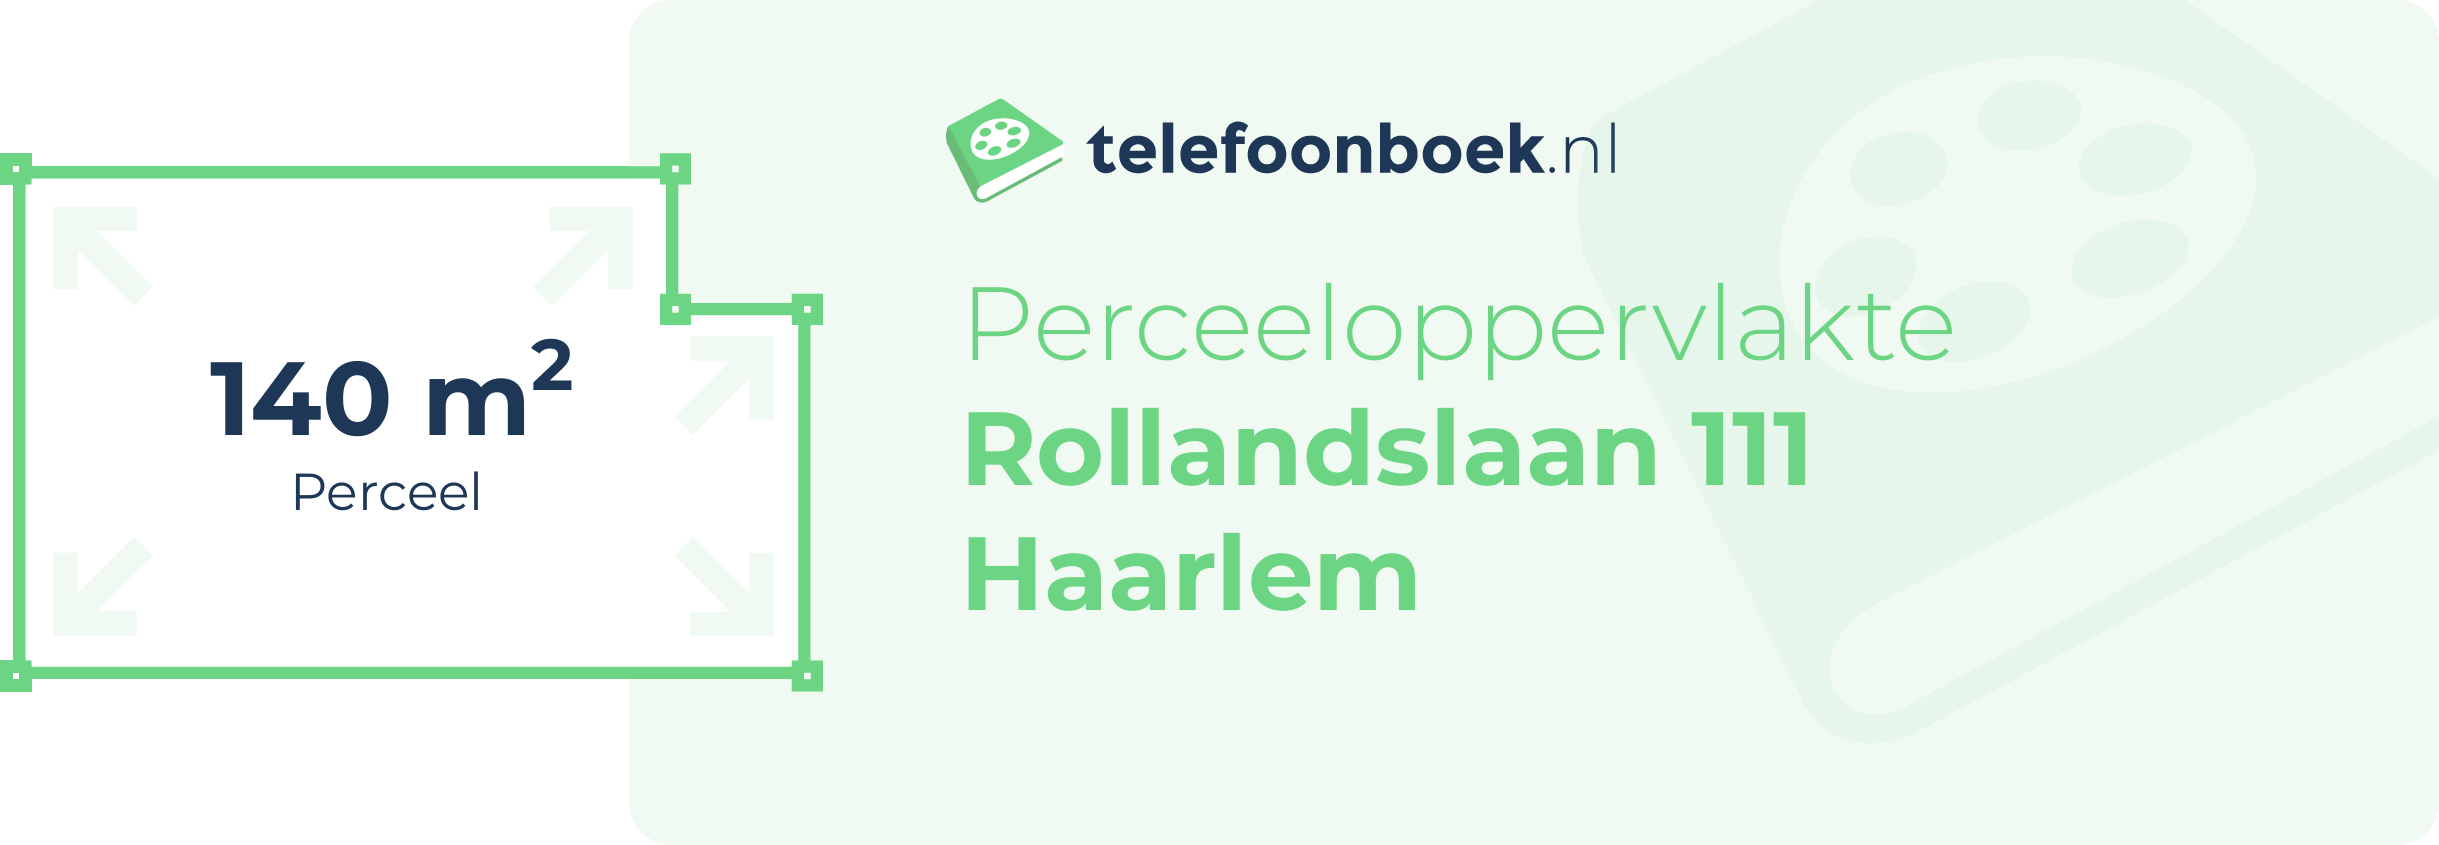 Perceeloppervlakte Rollandslaan 111 Haarlem